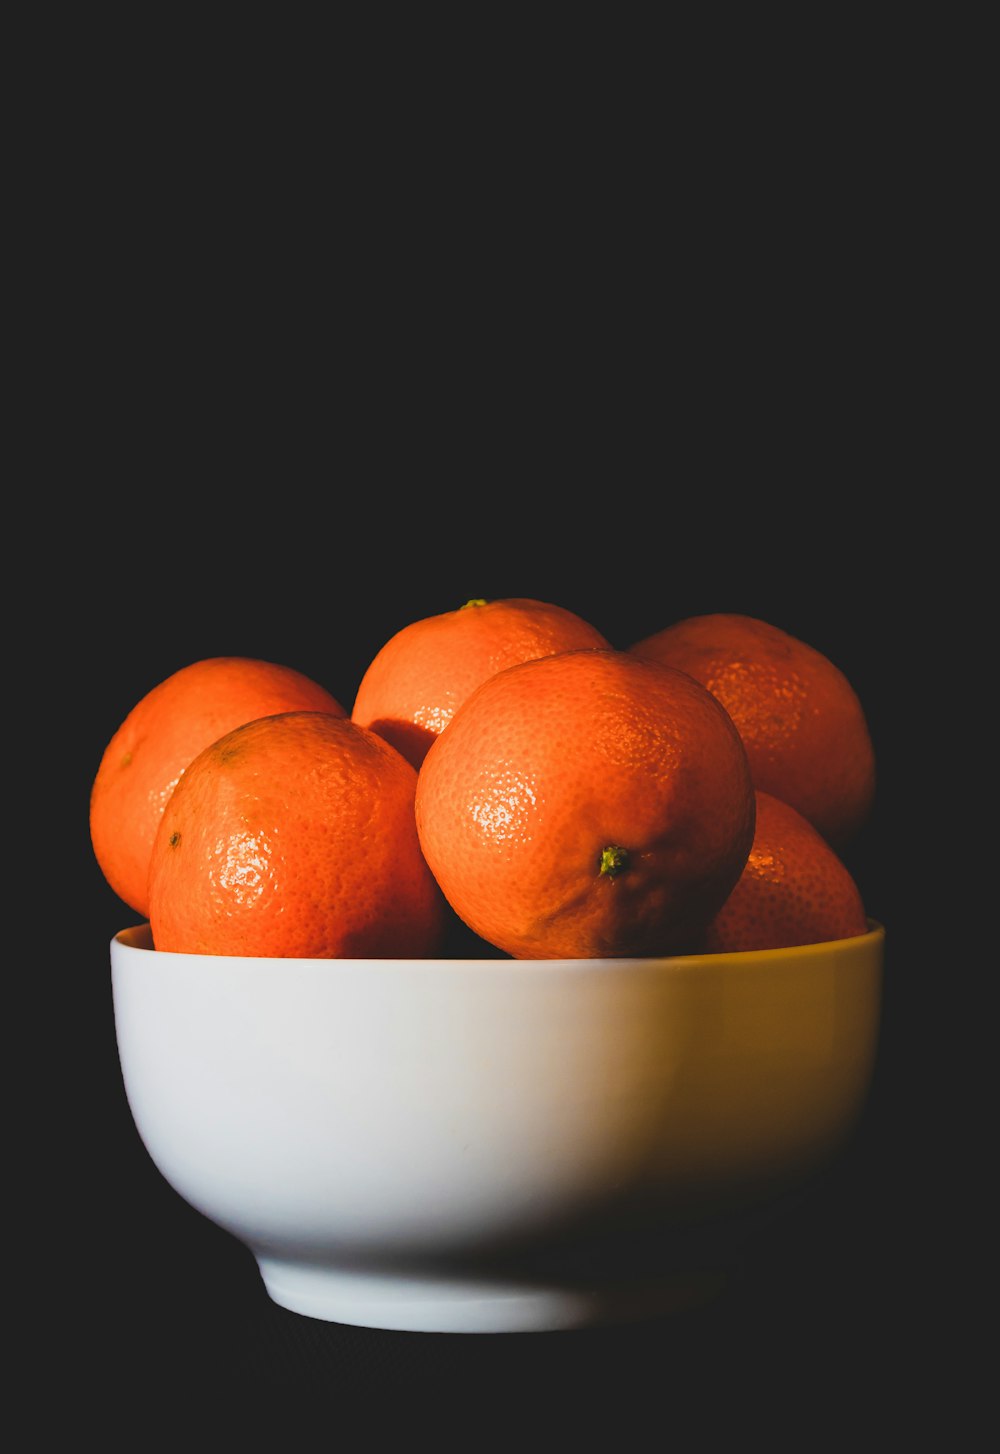 흰색 세라믹 그릇에 오렌지 과일